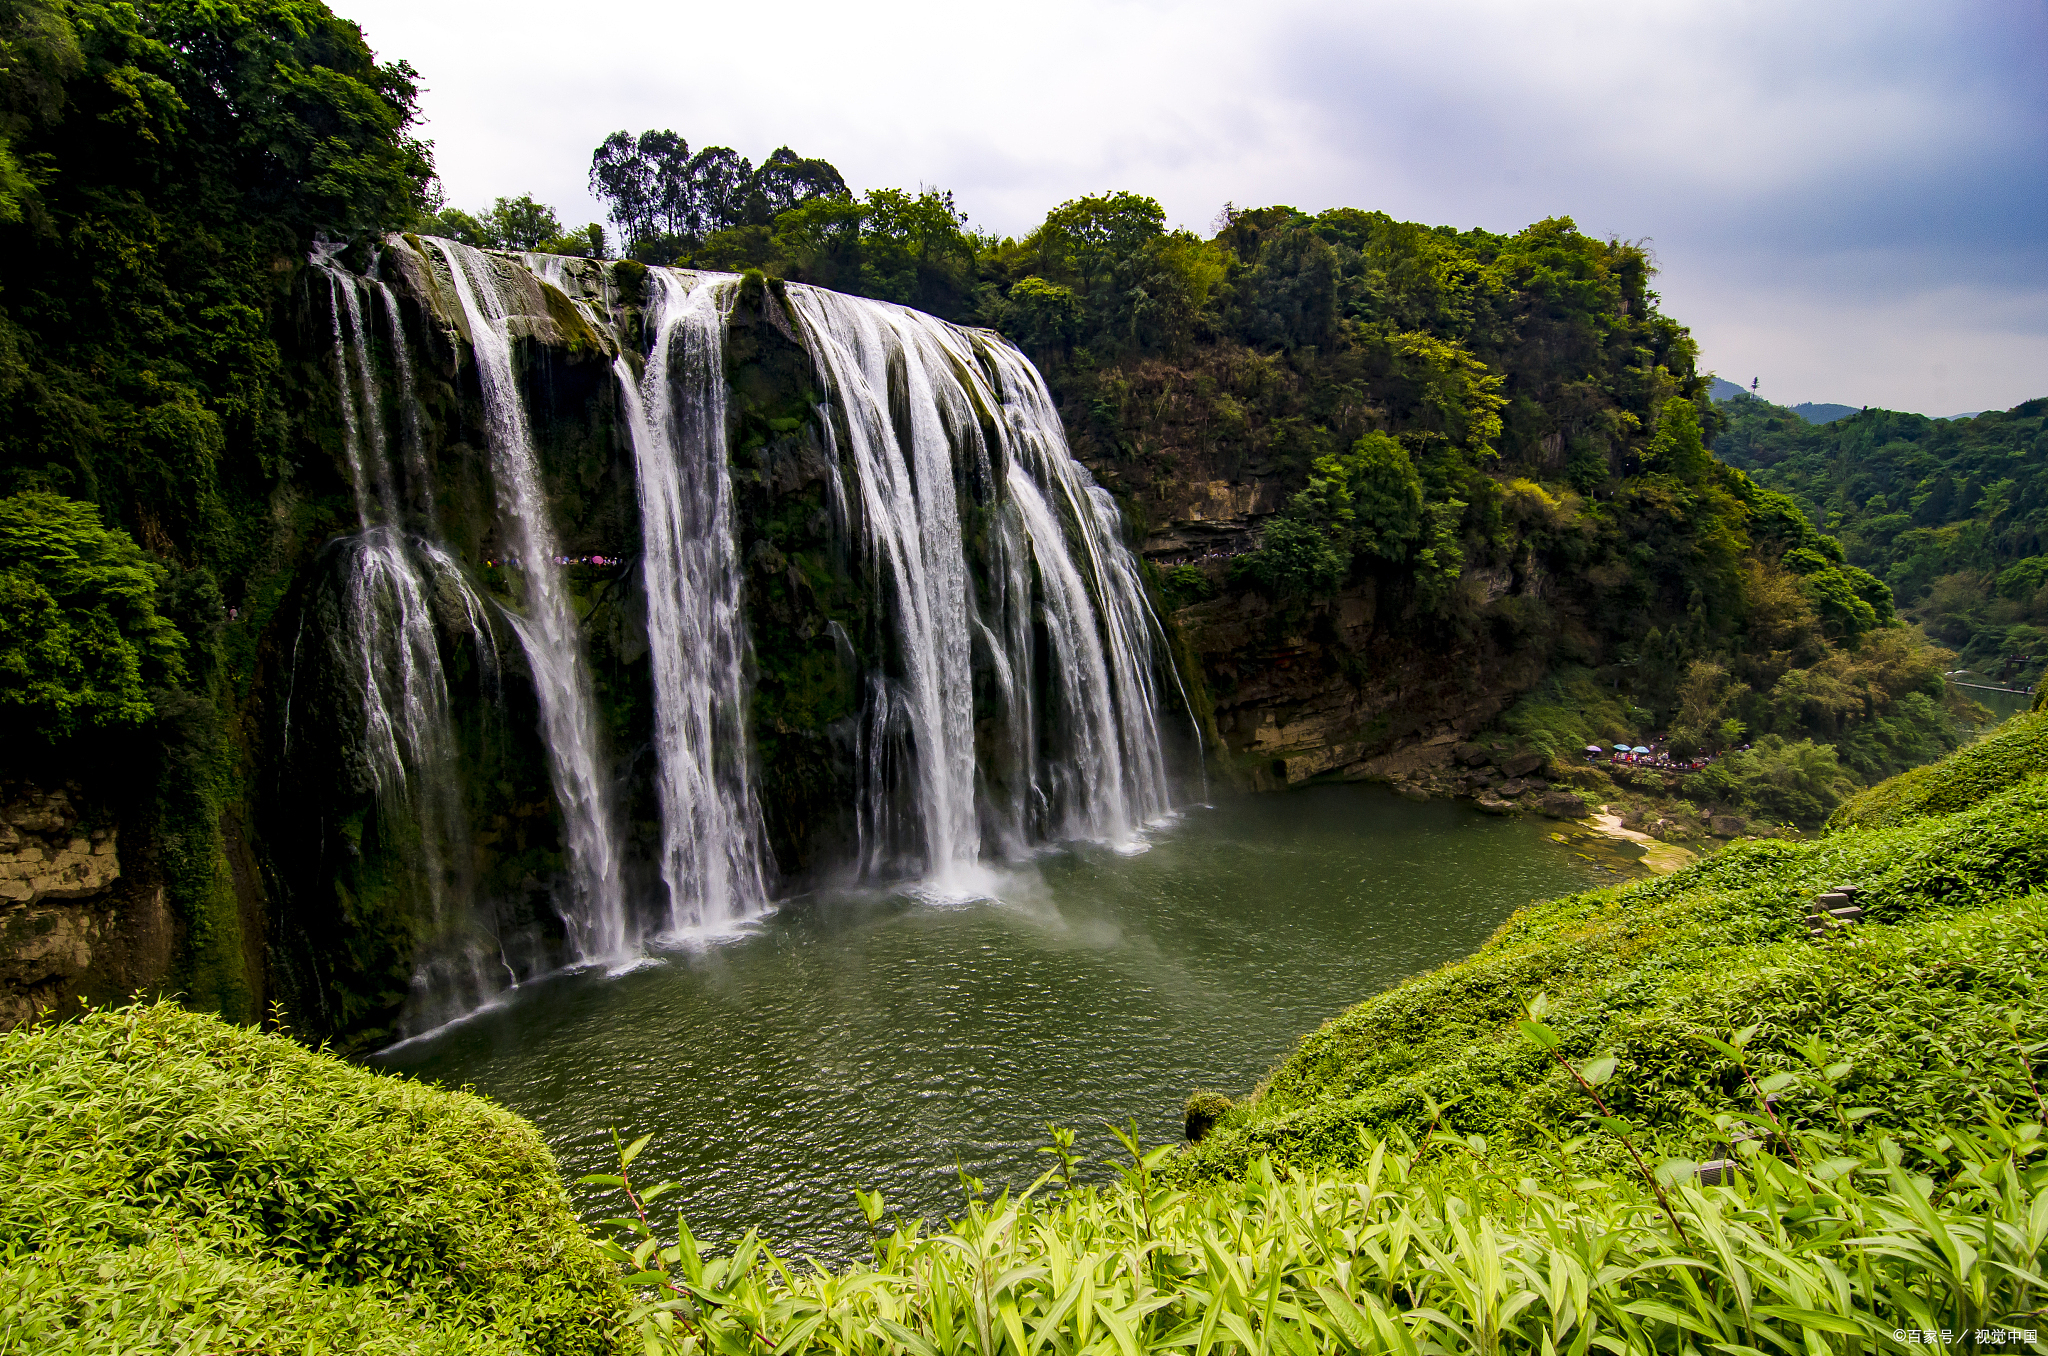 黄果树风景名胜区位于我国贵州省西南部,是我国著名的旅游景点,被誉为